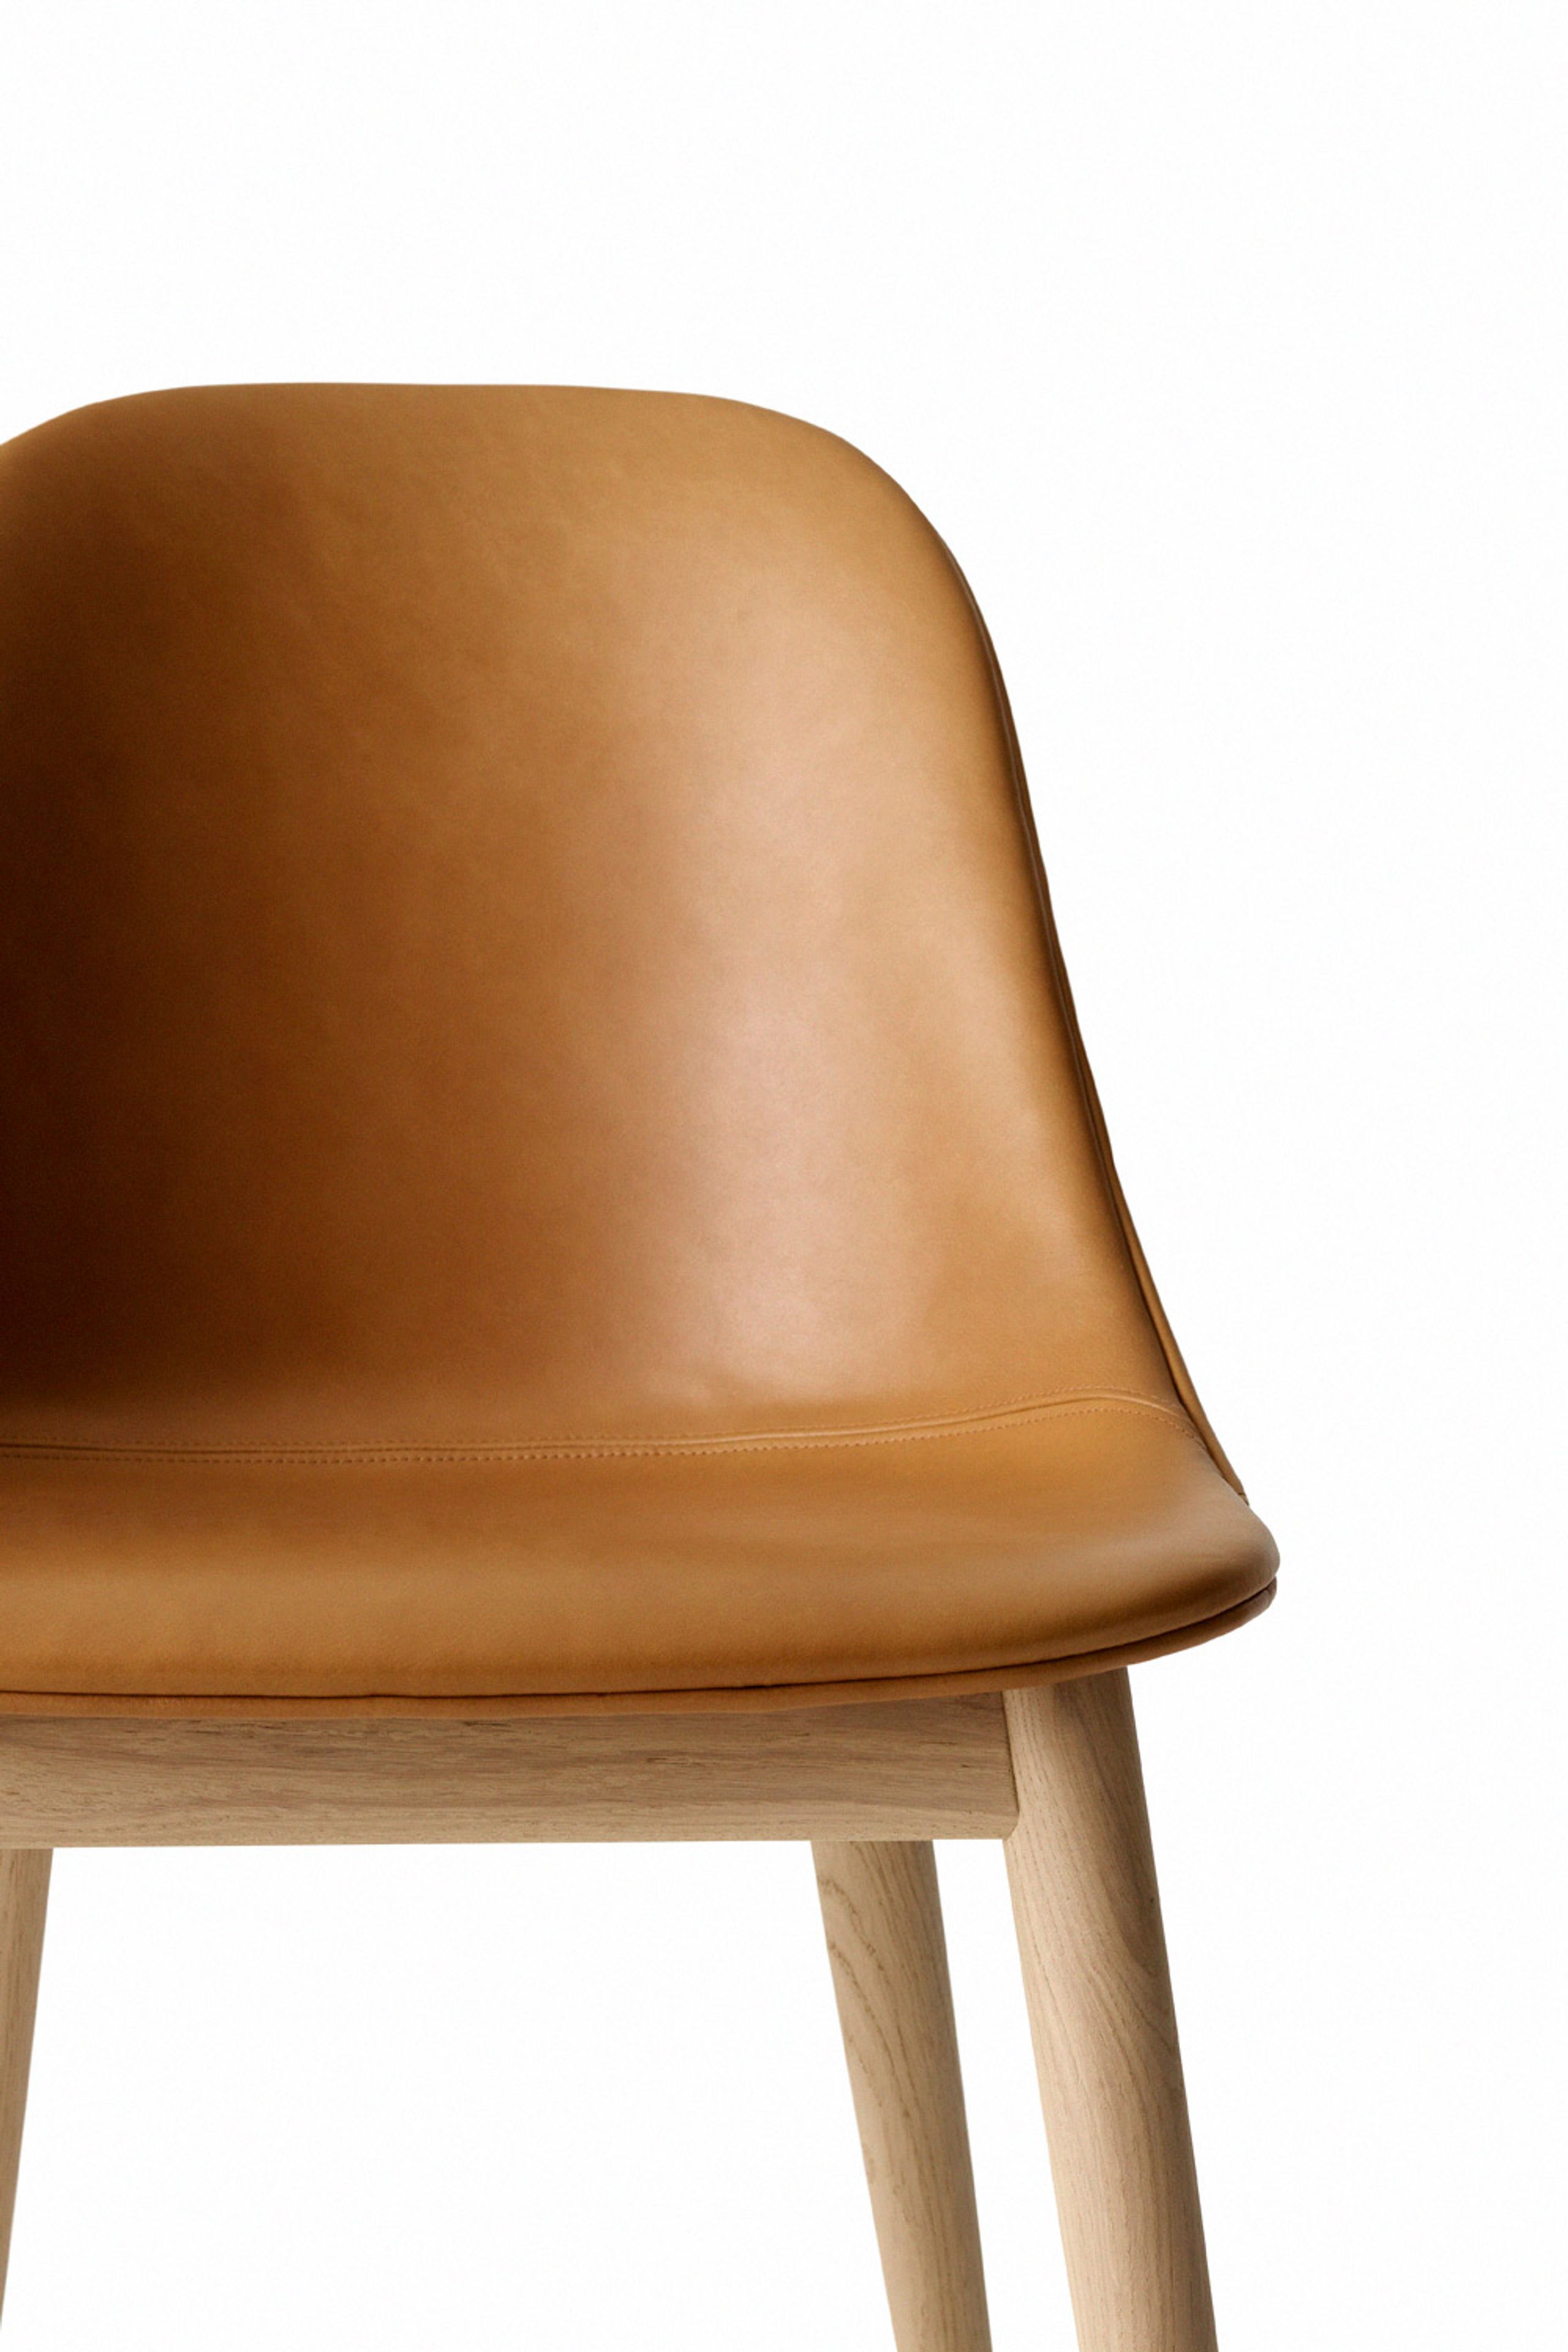 MENU - Cadeira - Harbour Dining Chair / Natural Oak Base - Upholstery: Dakar 0250